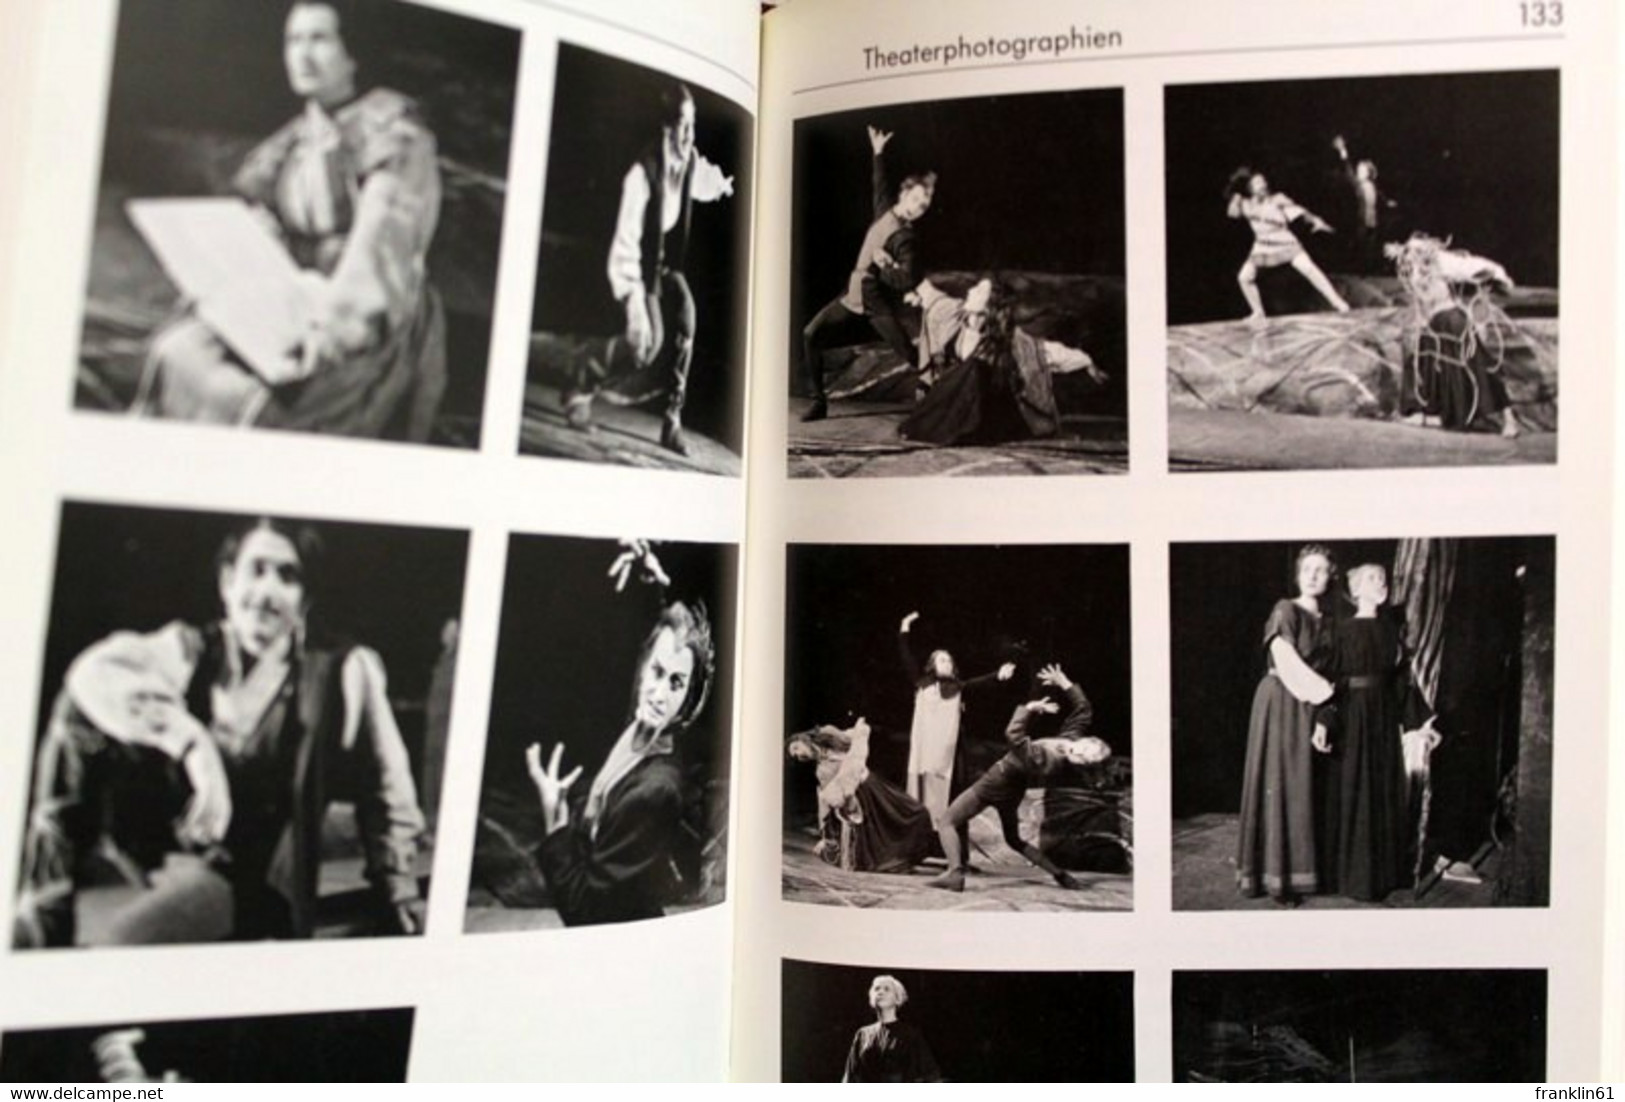 Schweizerische Theatersammlung 1927 - 1985. - Theatre & Dance